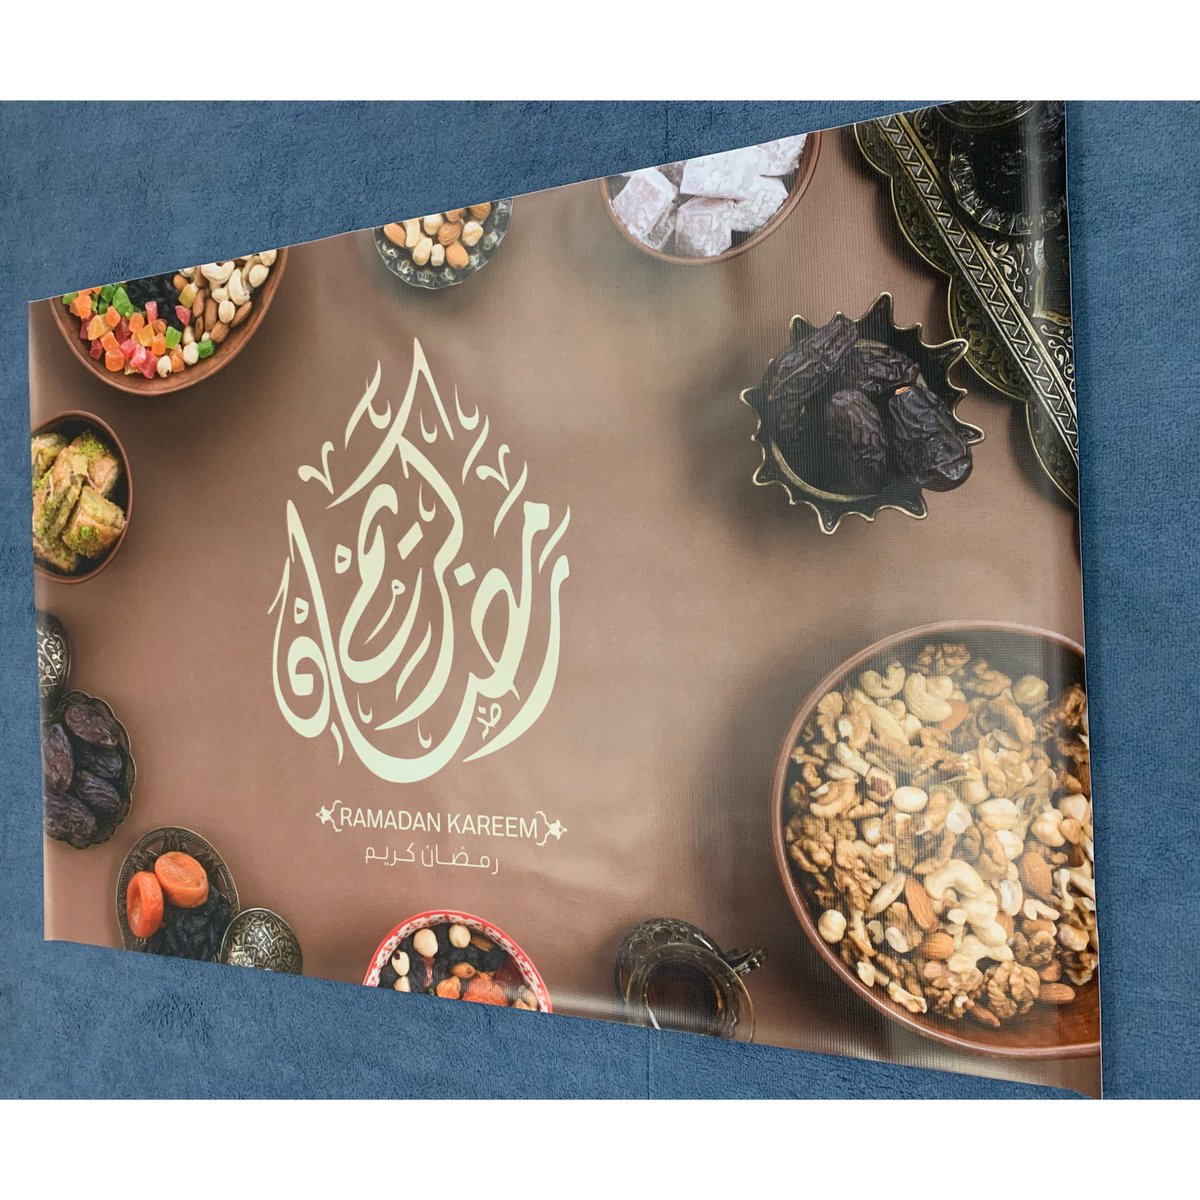 Qatar Press on Twitter: "طباعة سفرة رمضان التصميم على حسب رغبة العميل في  #القطريه_للطباعه و متعدد الاستعمال في حال الغسيل تتغسل بماي فاتر او دافي مع  غسيل الصحون و اسفنجه يمنع استعمال